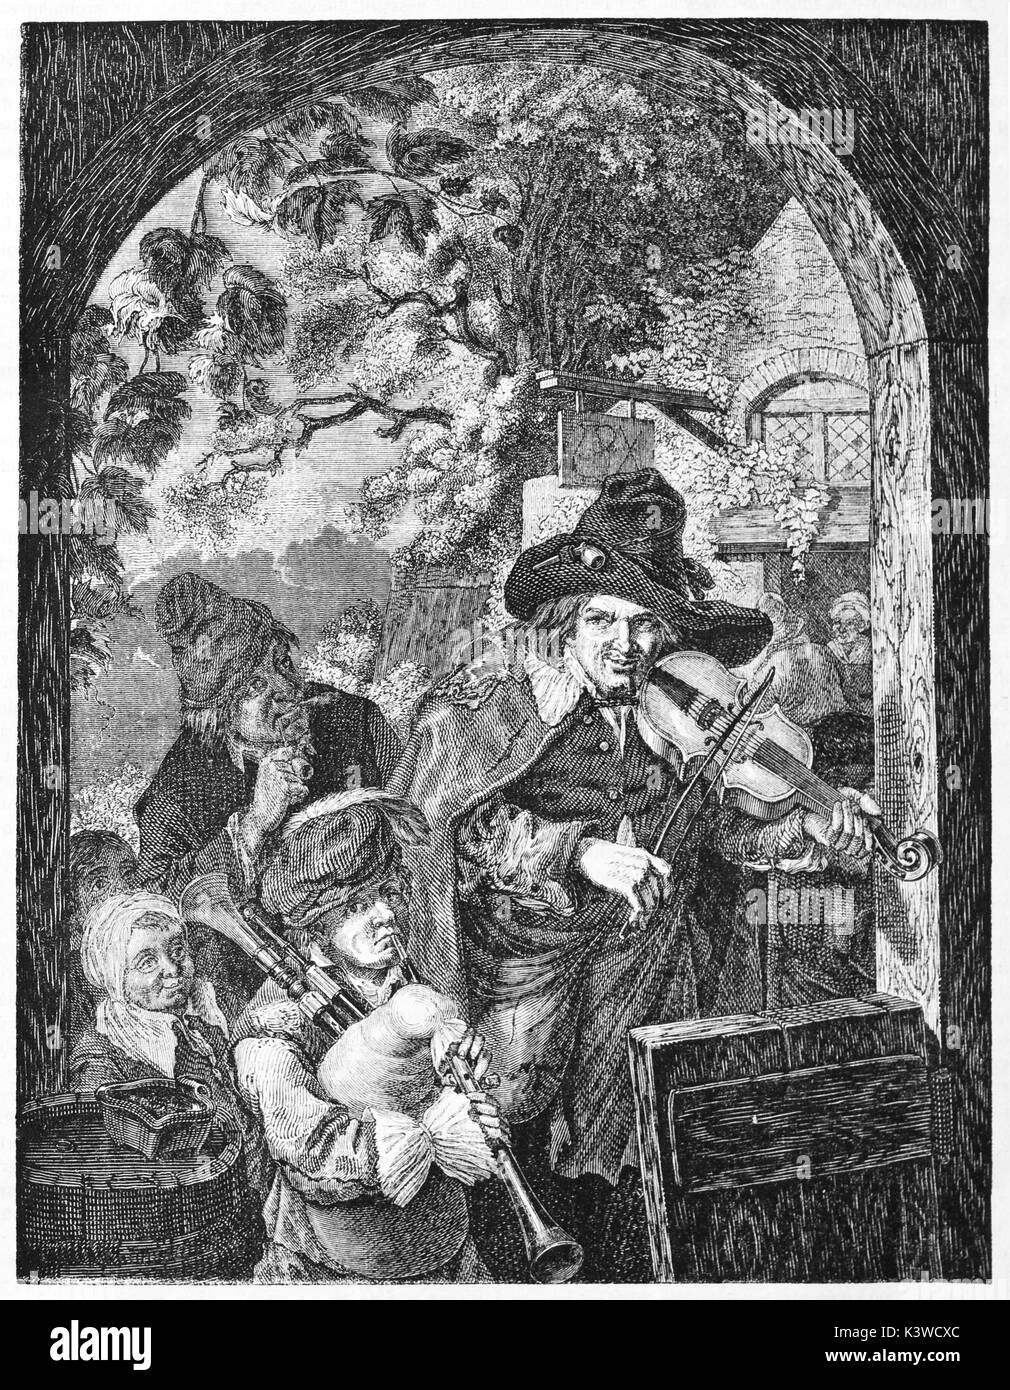 Les Musiciens ambulants (buskers) vieille illustration, créé byD'Alençon après Dietrich et Wille. Publié le Magasin Pittoresque, Paris, 1841 Banque D'Images